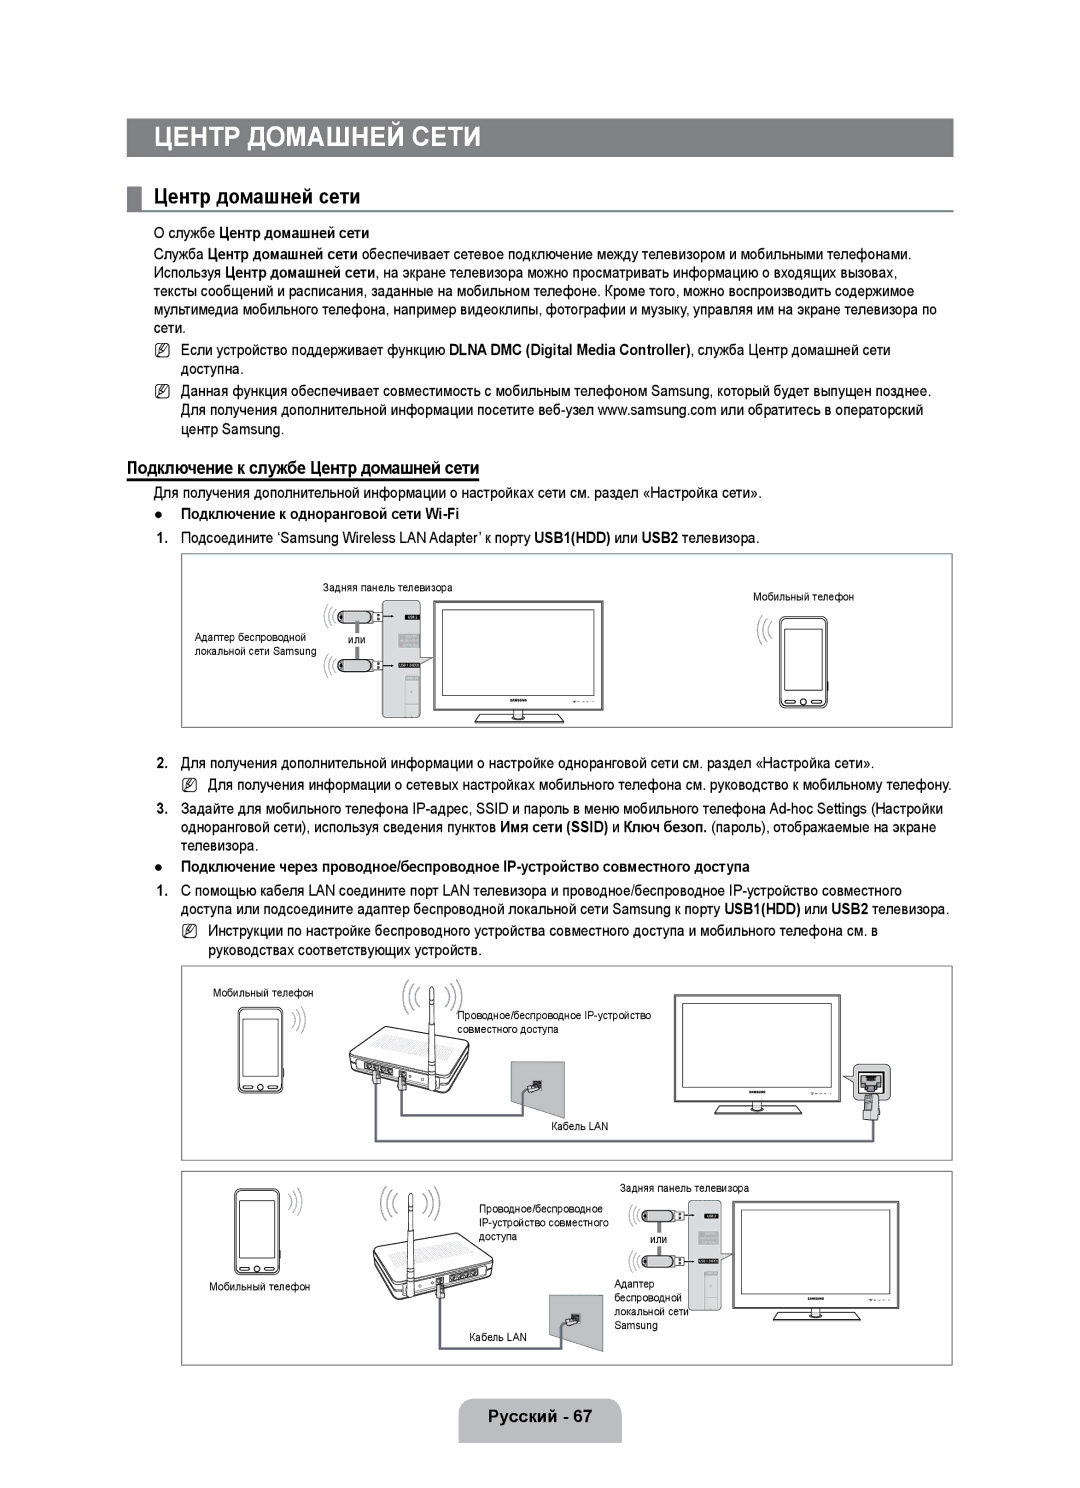 Samsung UE40B7000WWXZG, UE40B7020WWXUA manual Подключение к службе Центр домашней сети, Службе Центр домашней сети 